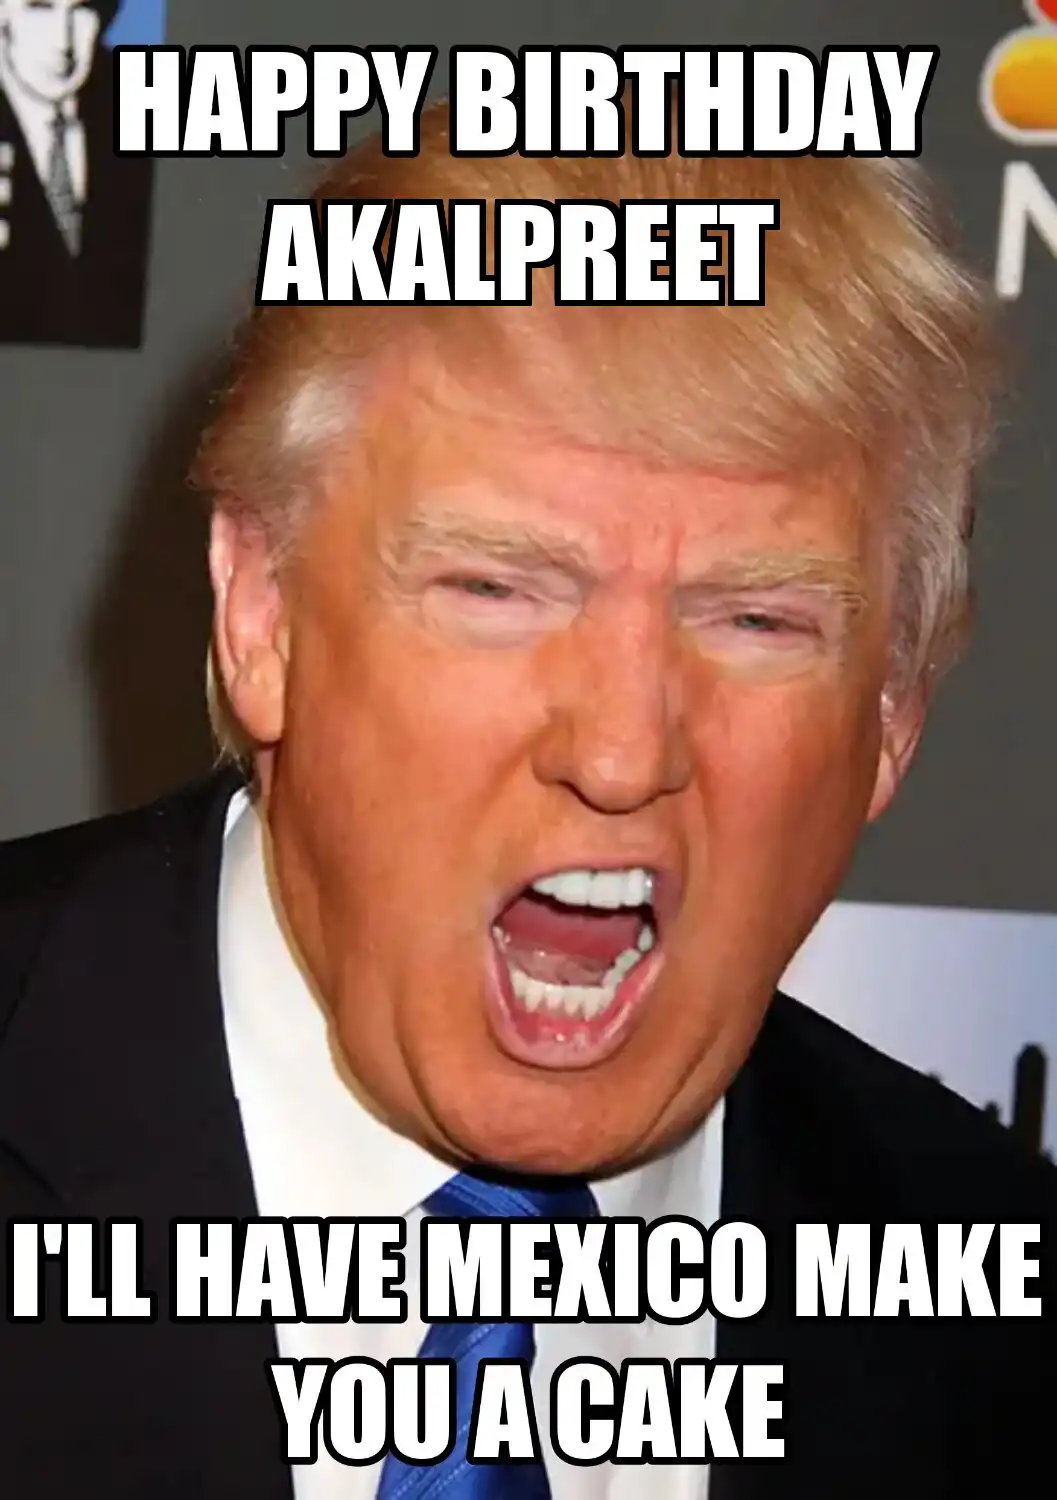 Happy Birthday Akalpreet Mexico Make You A Cake Meme